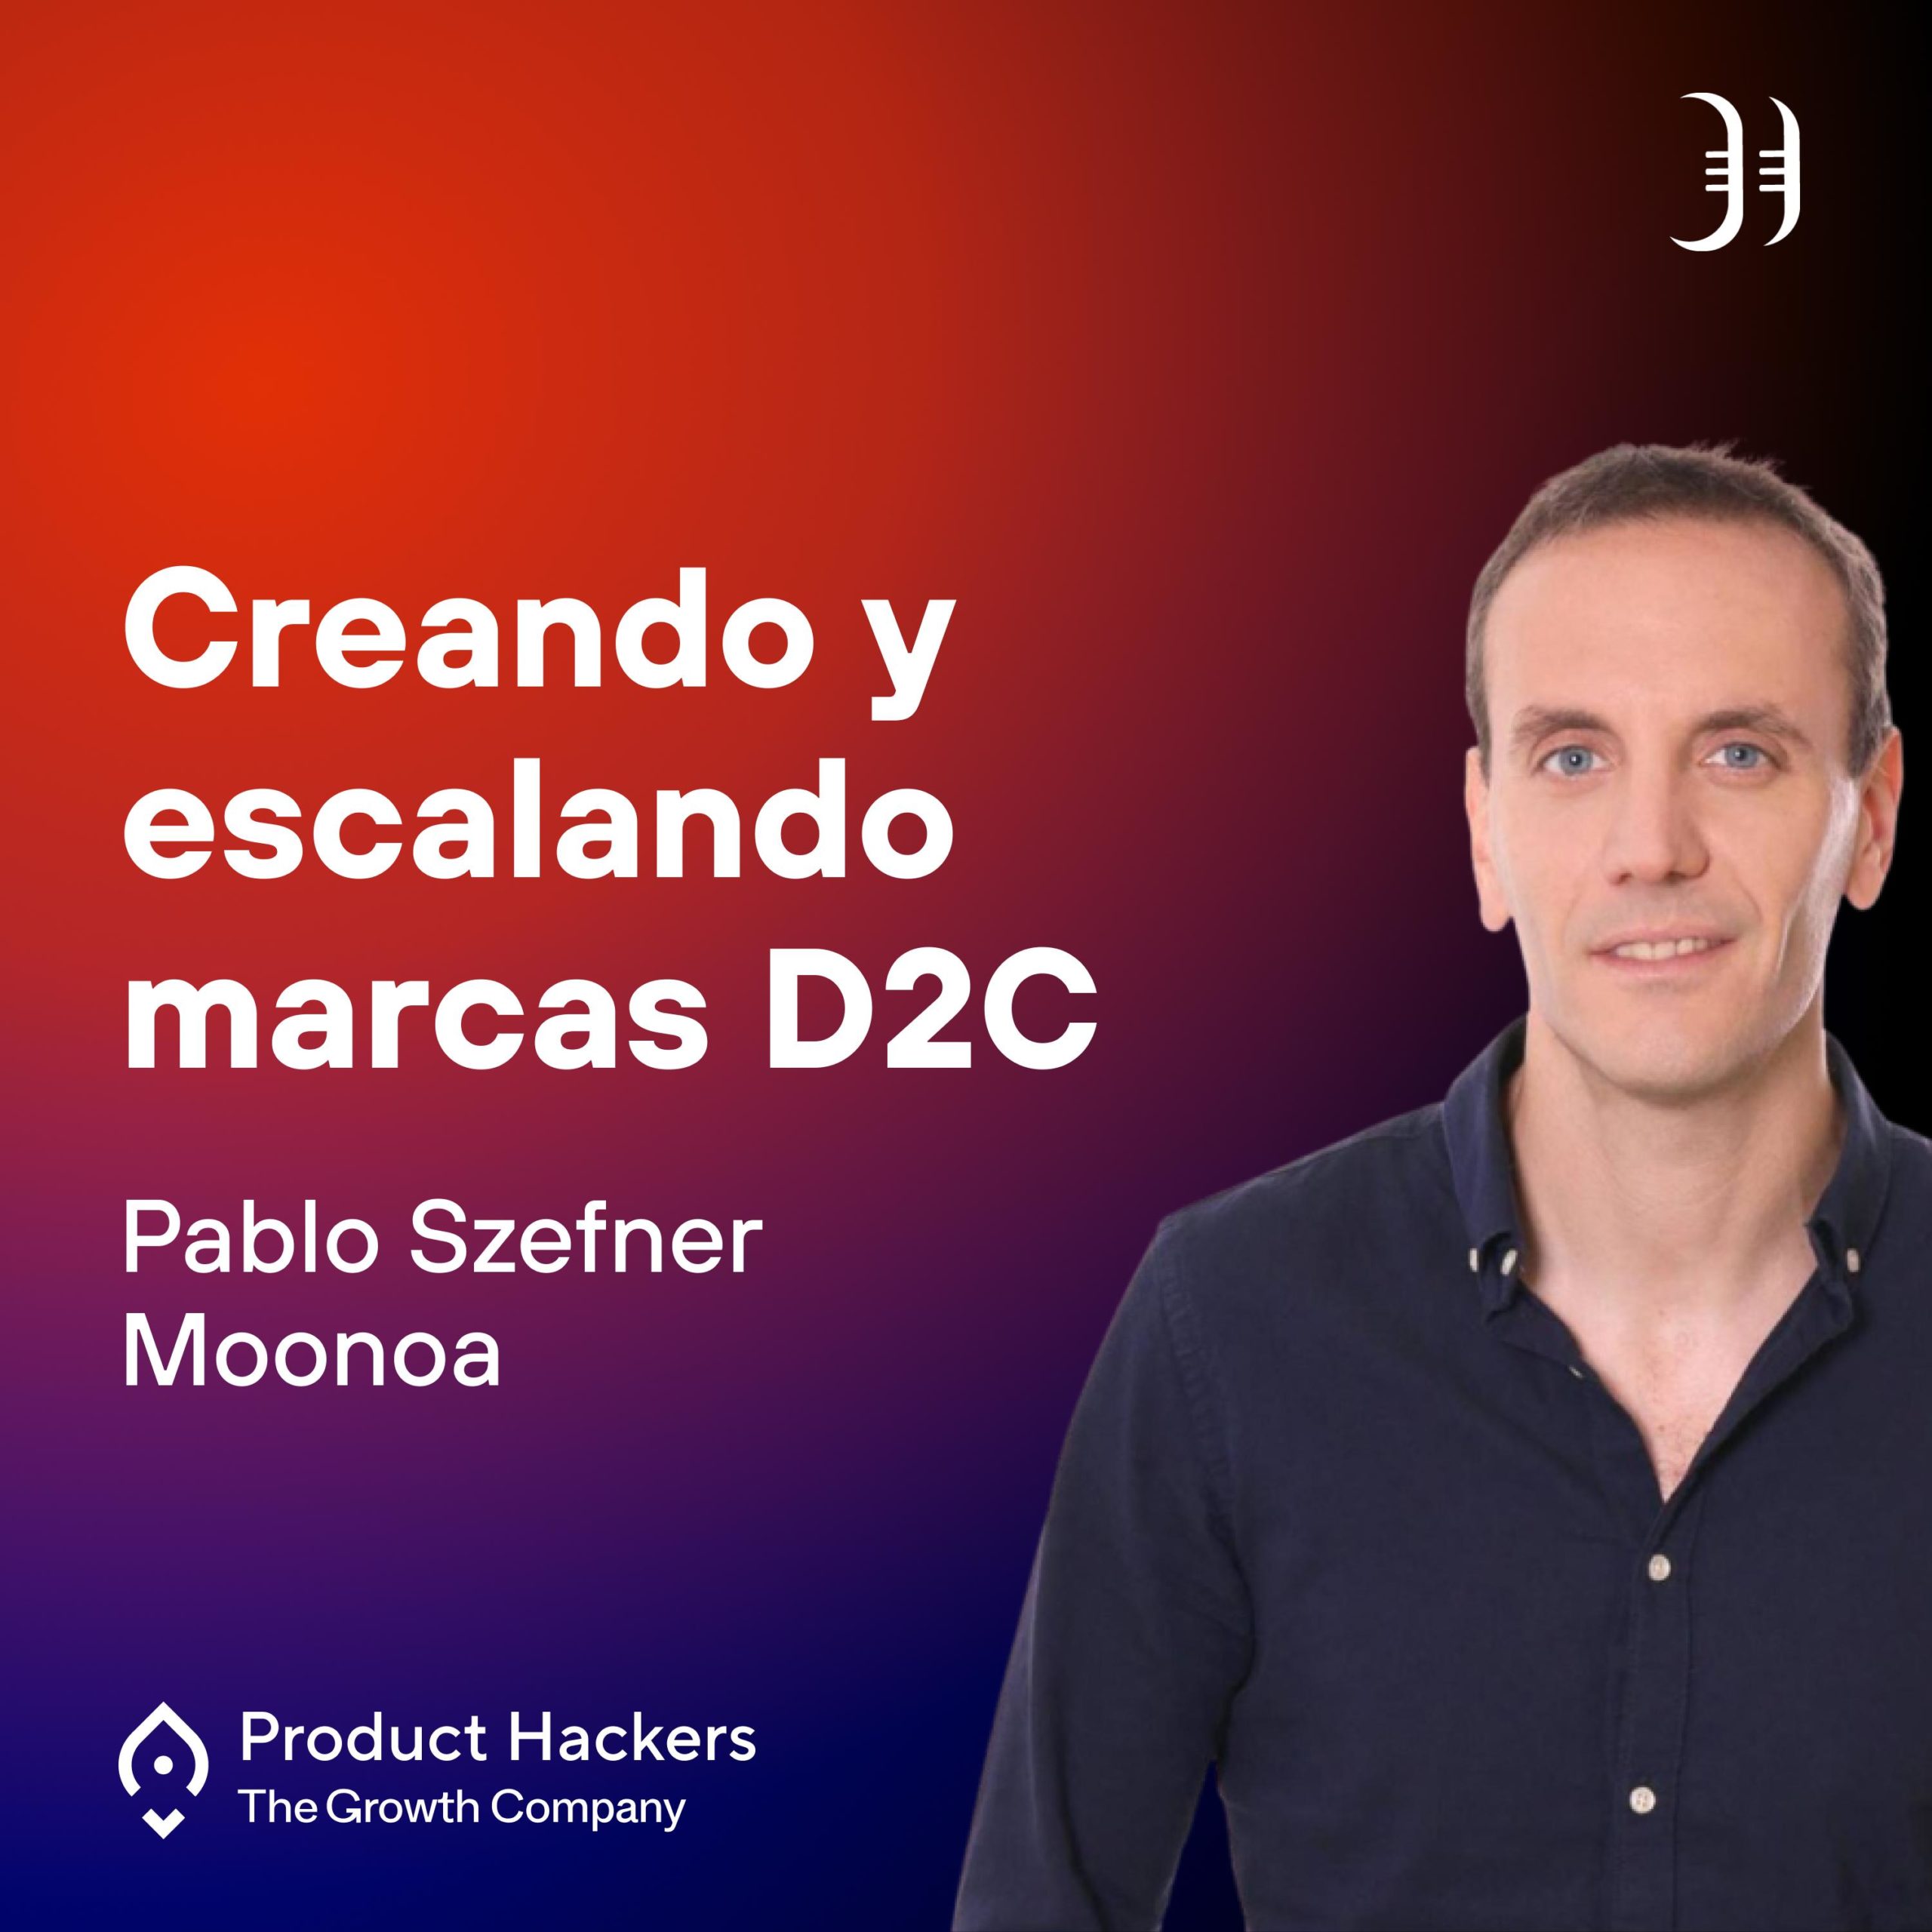 Creando y escalando marcas D2C con Pablo Szefner de Moonoa